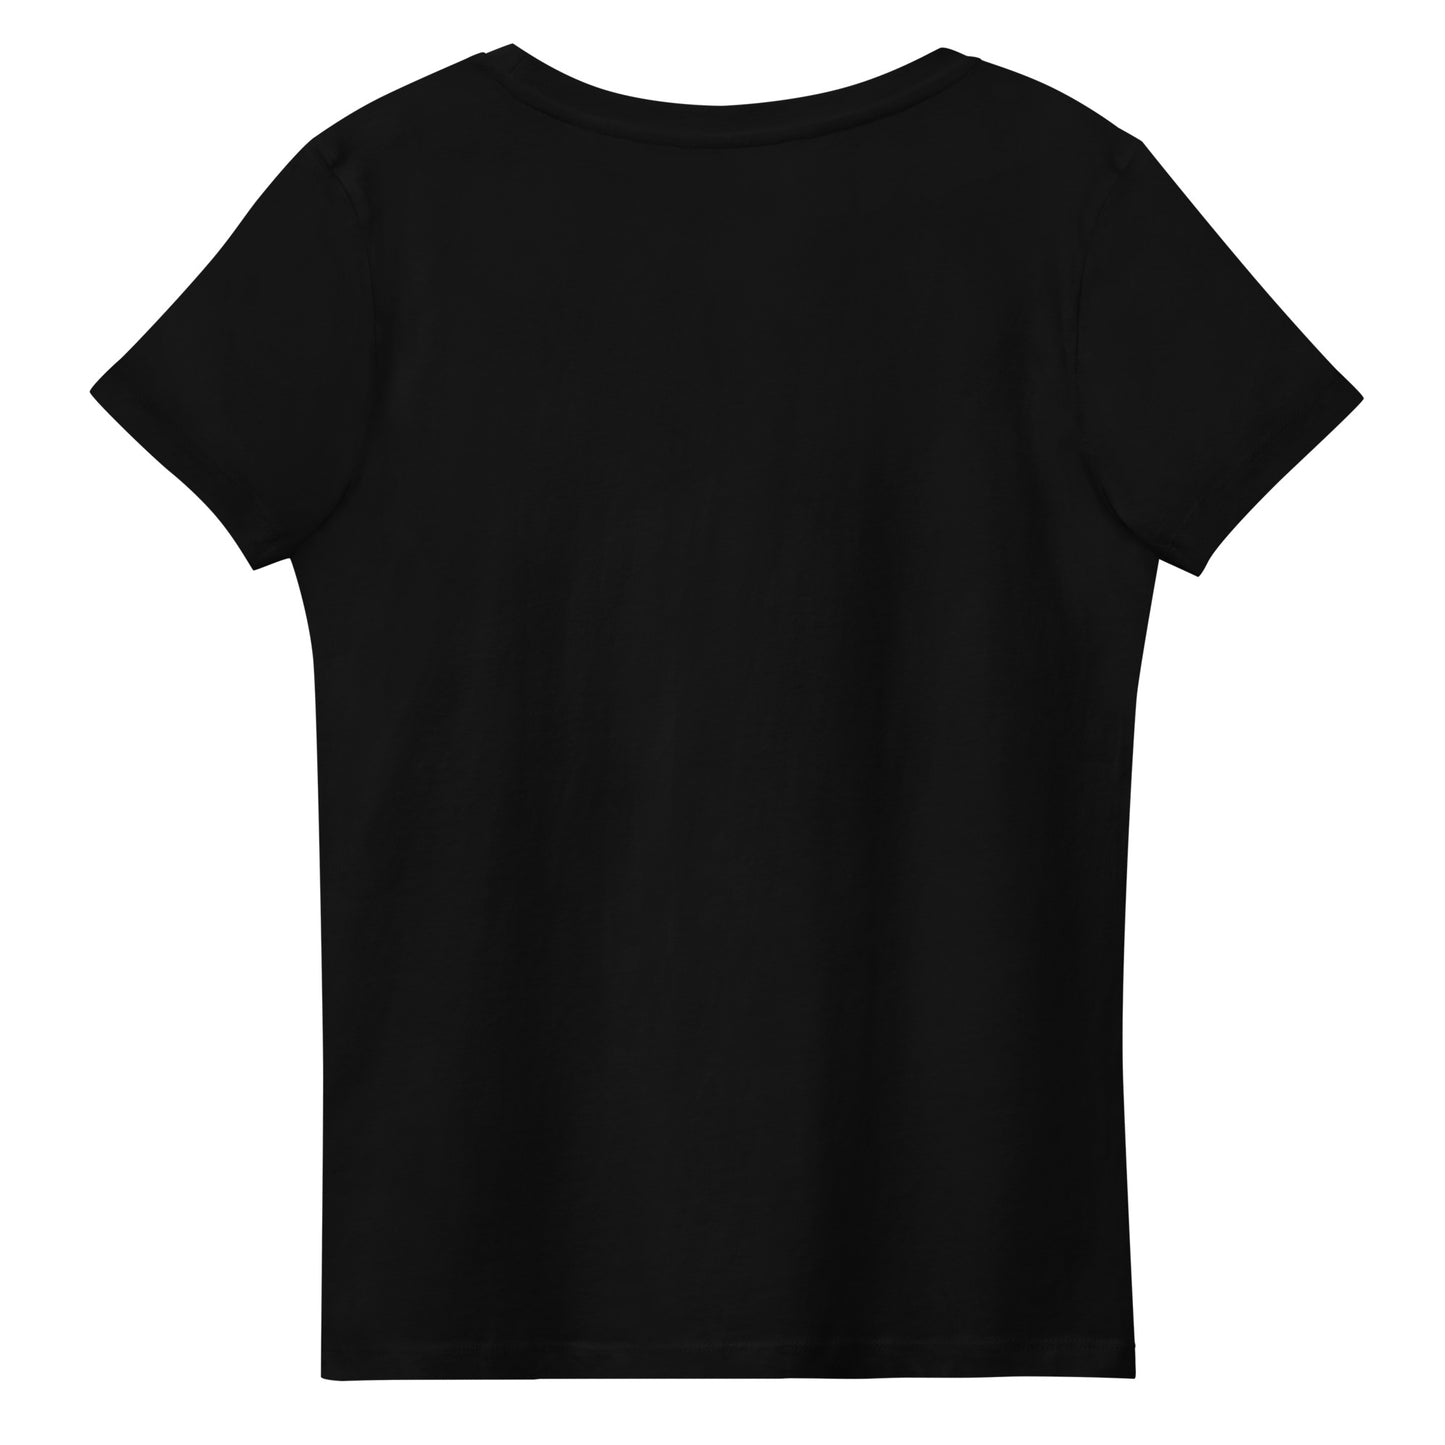 Jurylid Damesbrug - Getailleerd Eco-T-shirt voor dames